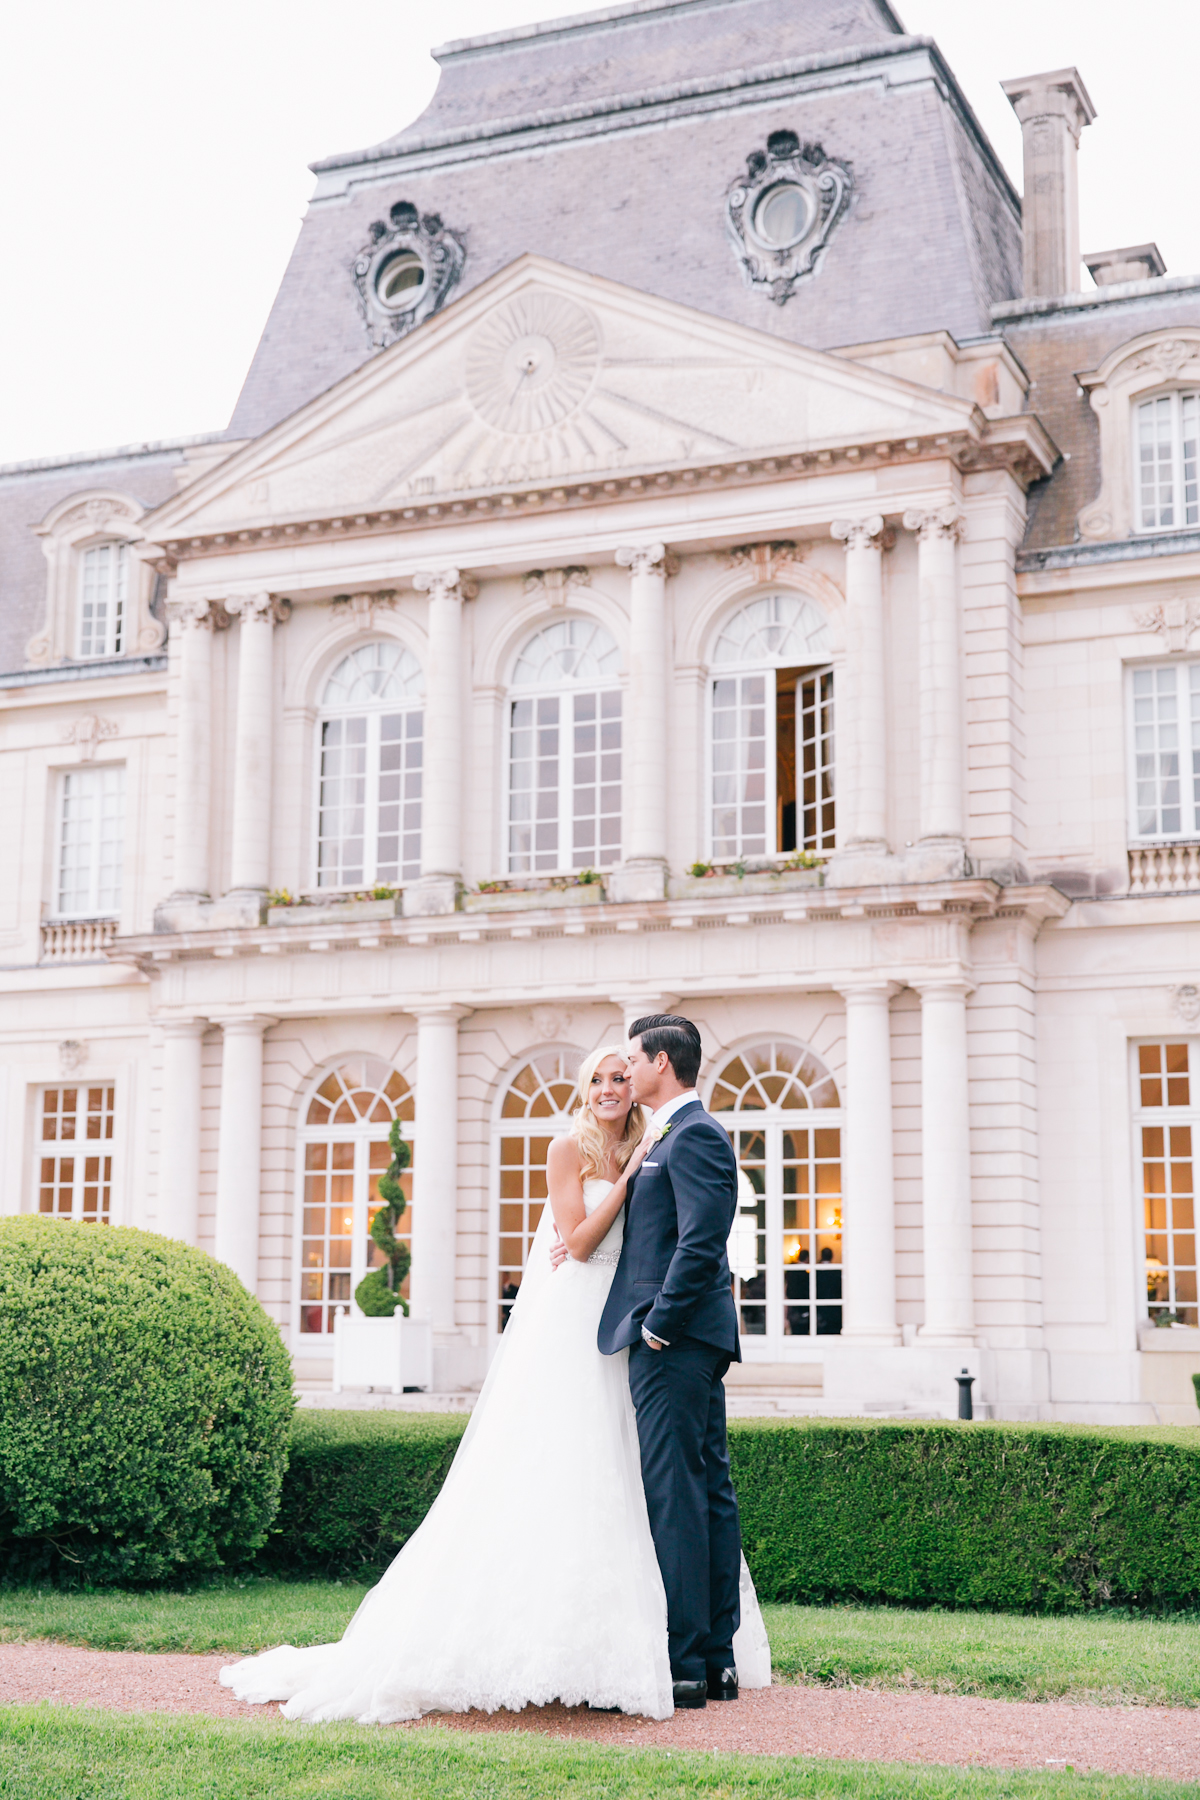 Dreamy + Romantic French Chateau Wedding